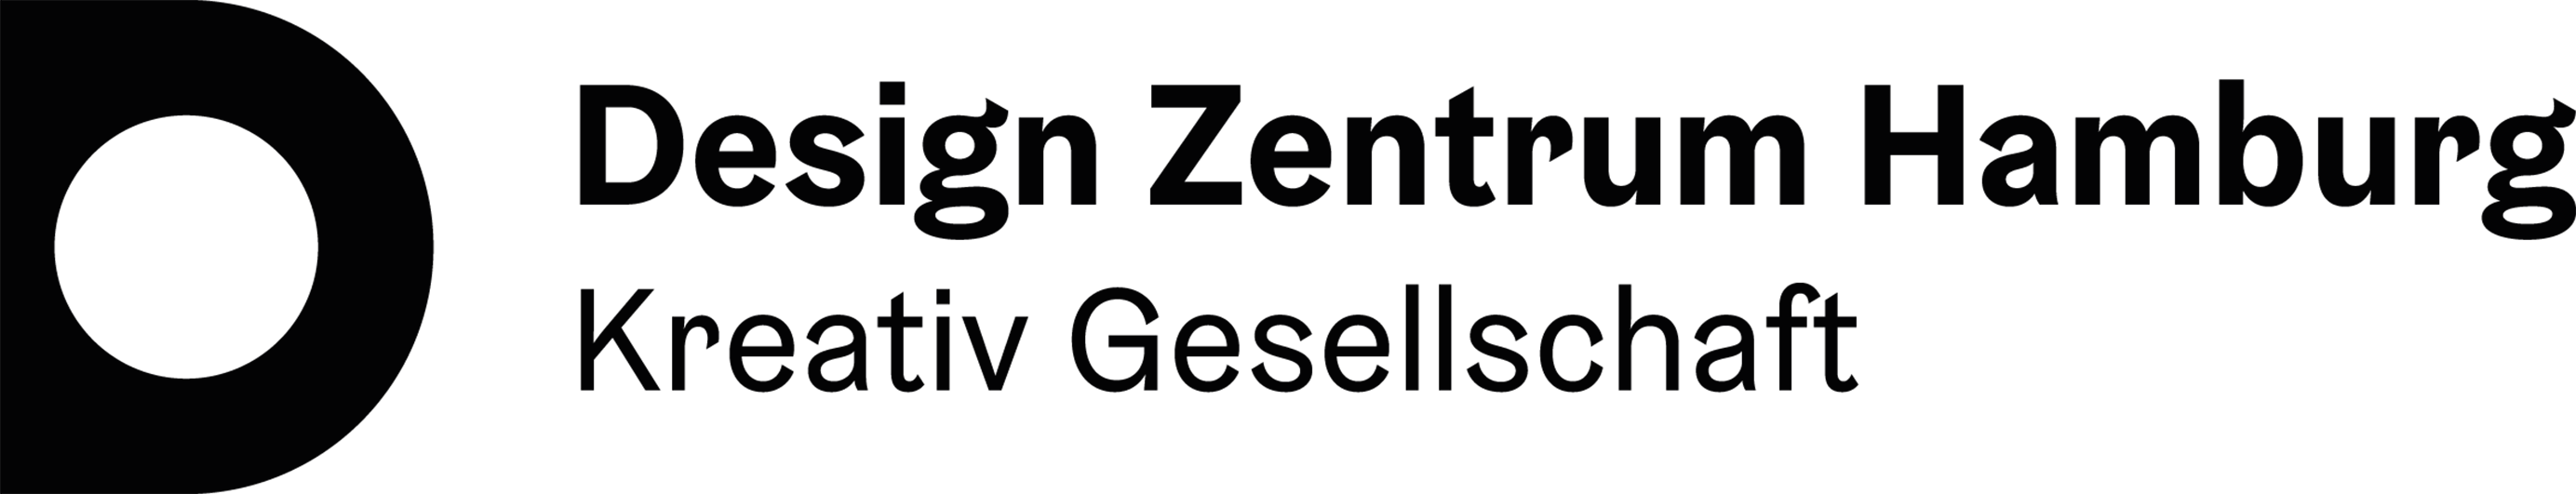 design_zentrum_logo_black